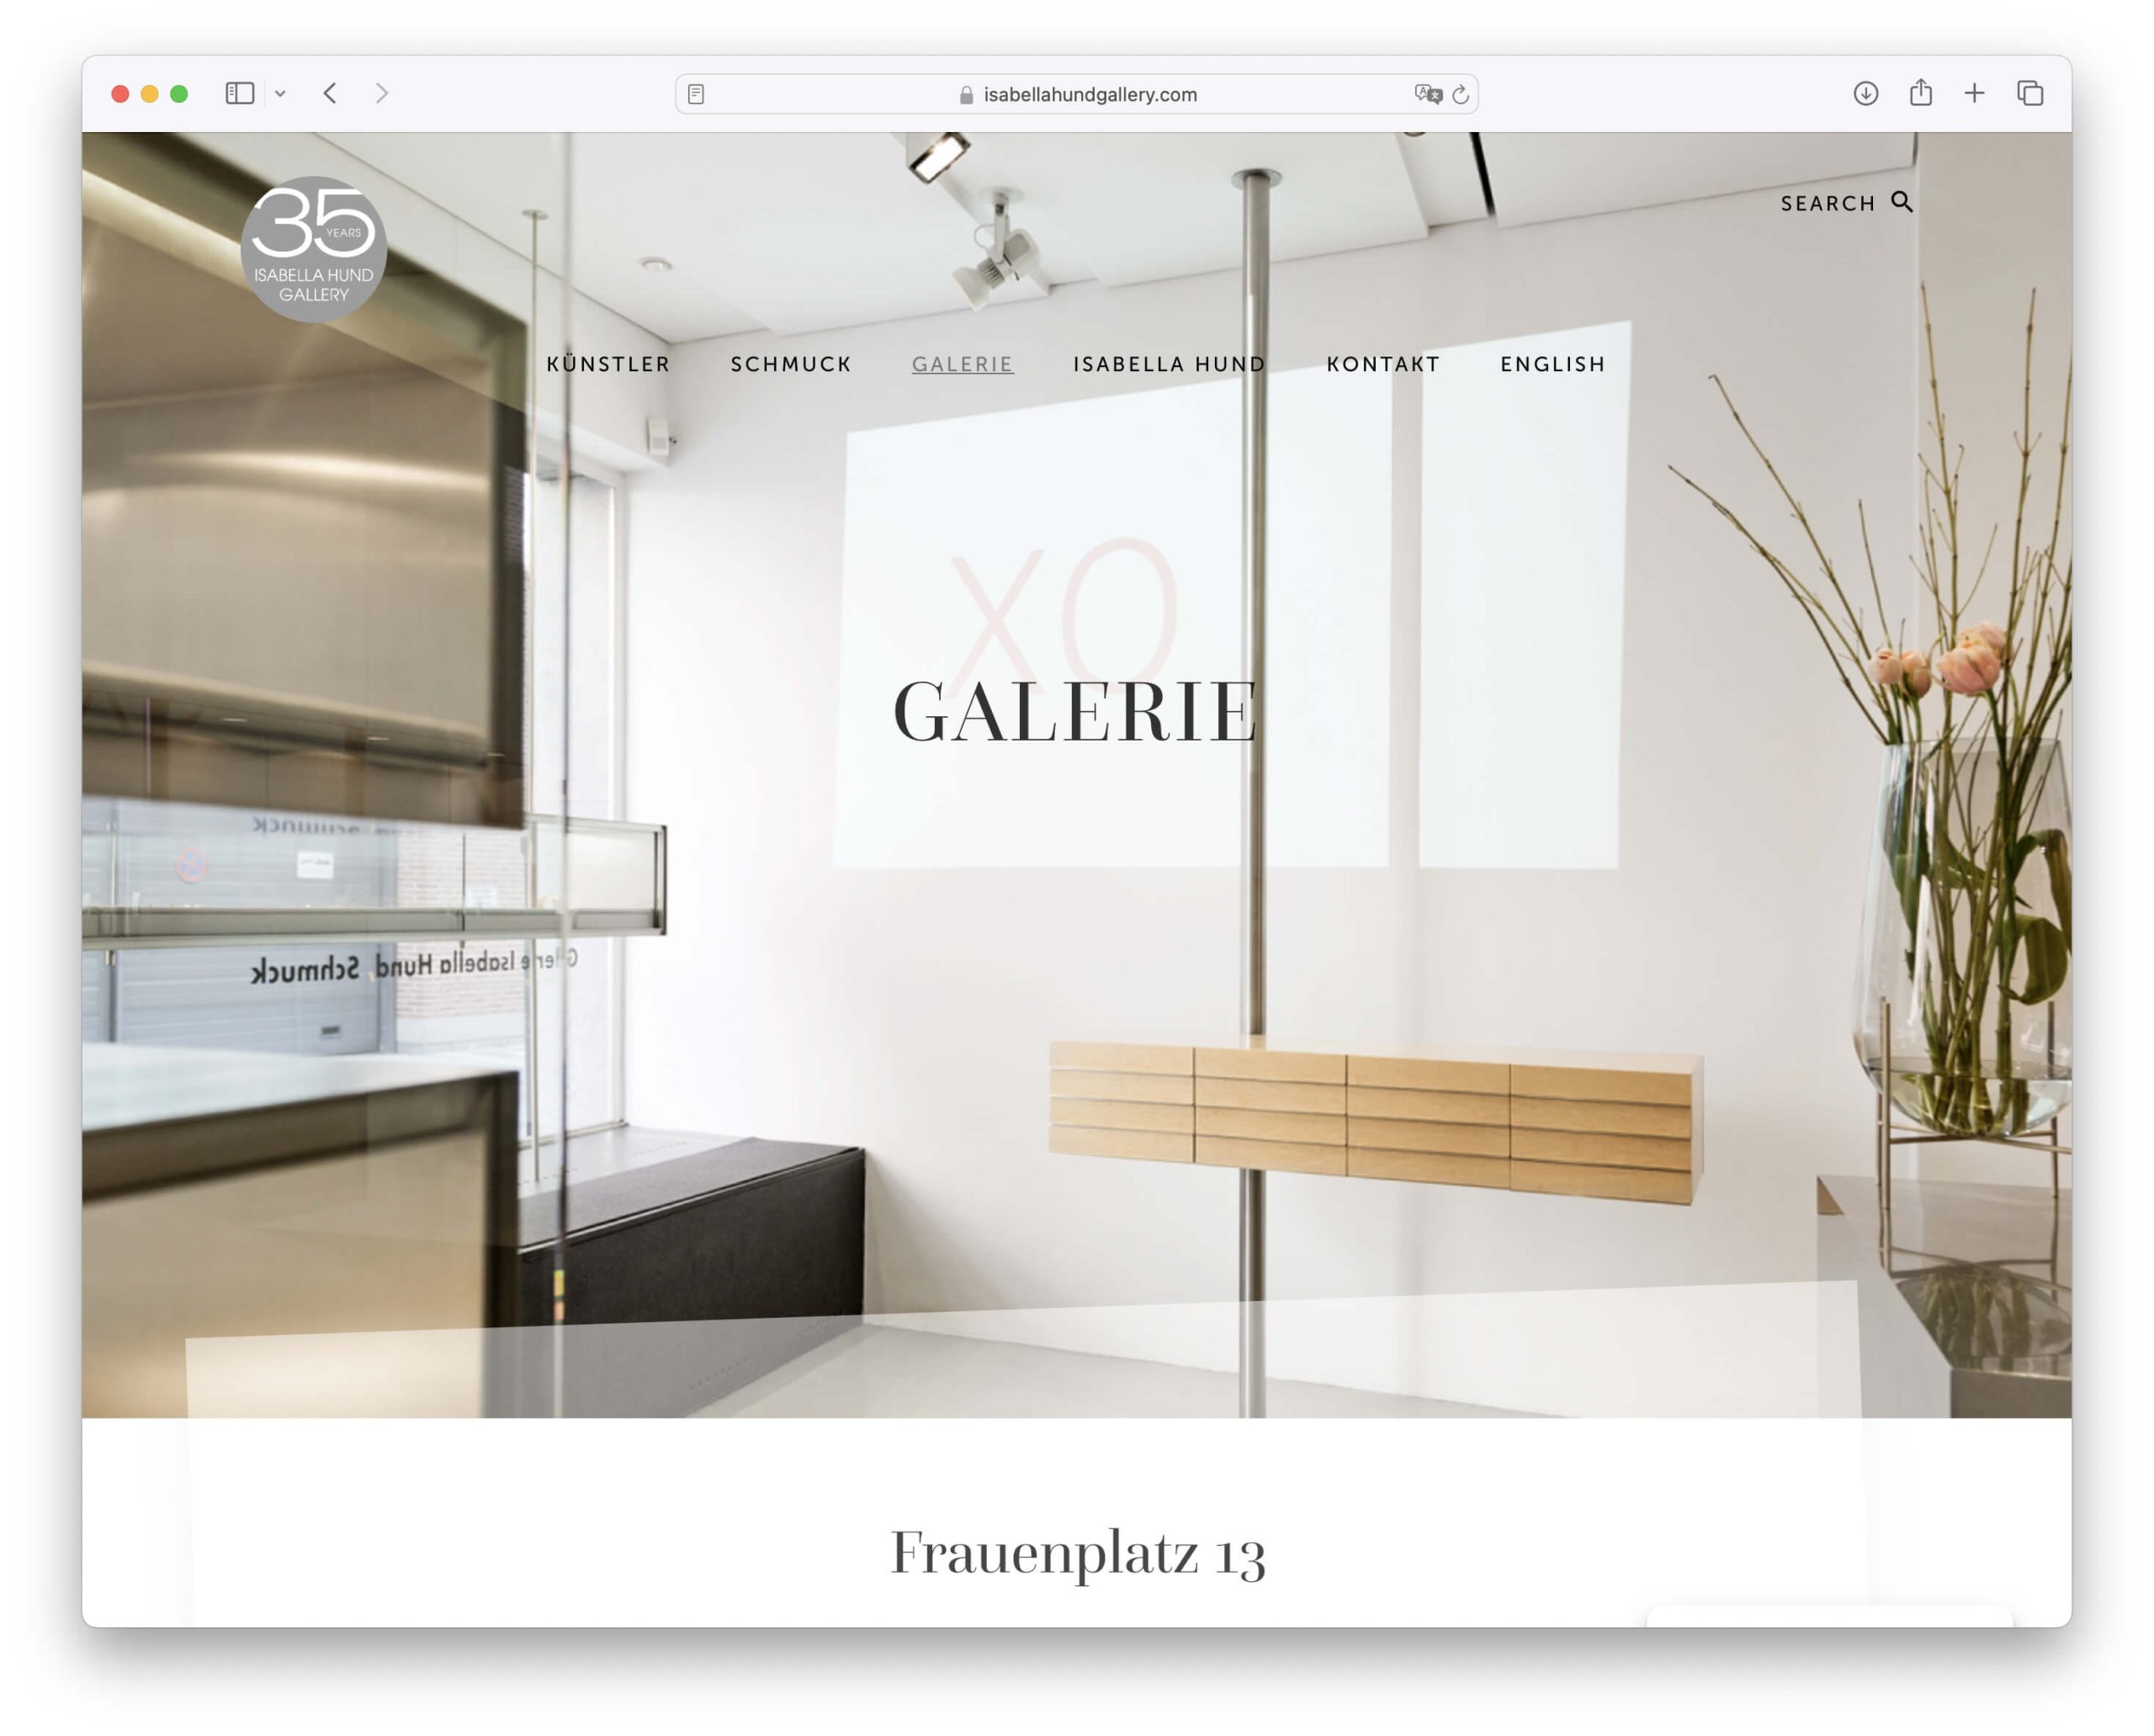 triptychon.design – Webdesign für Isabella Hund Gallery, München.